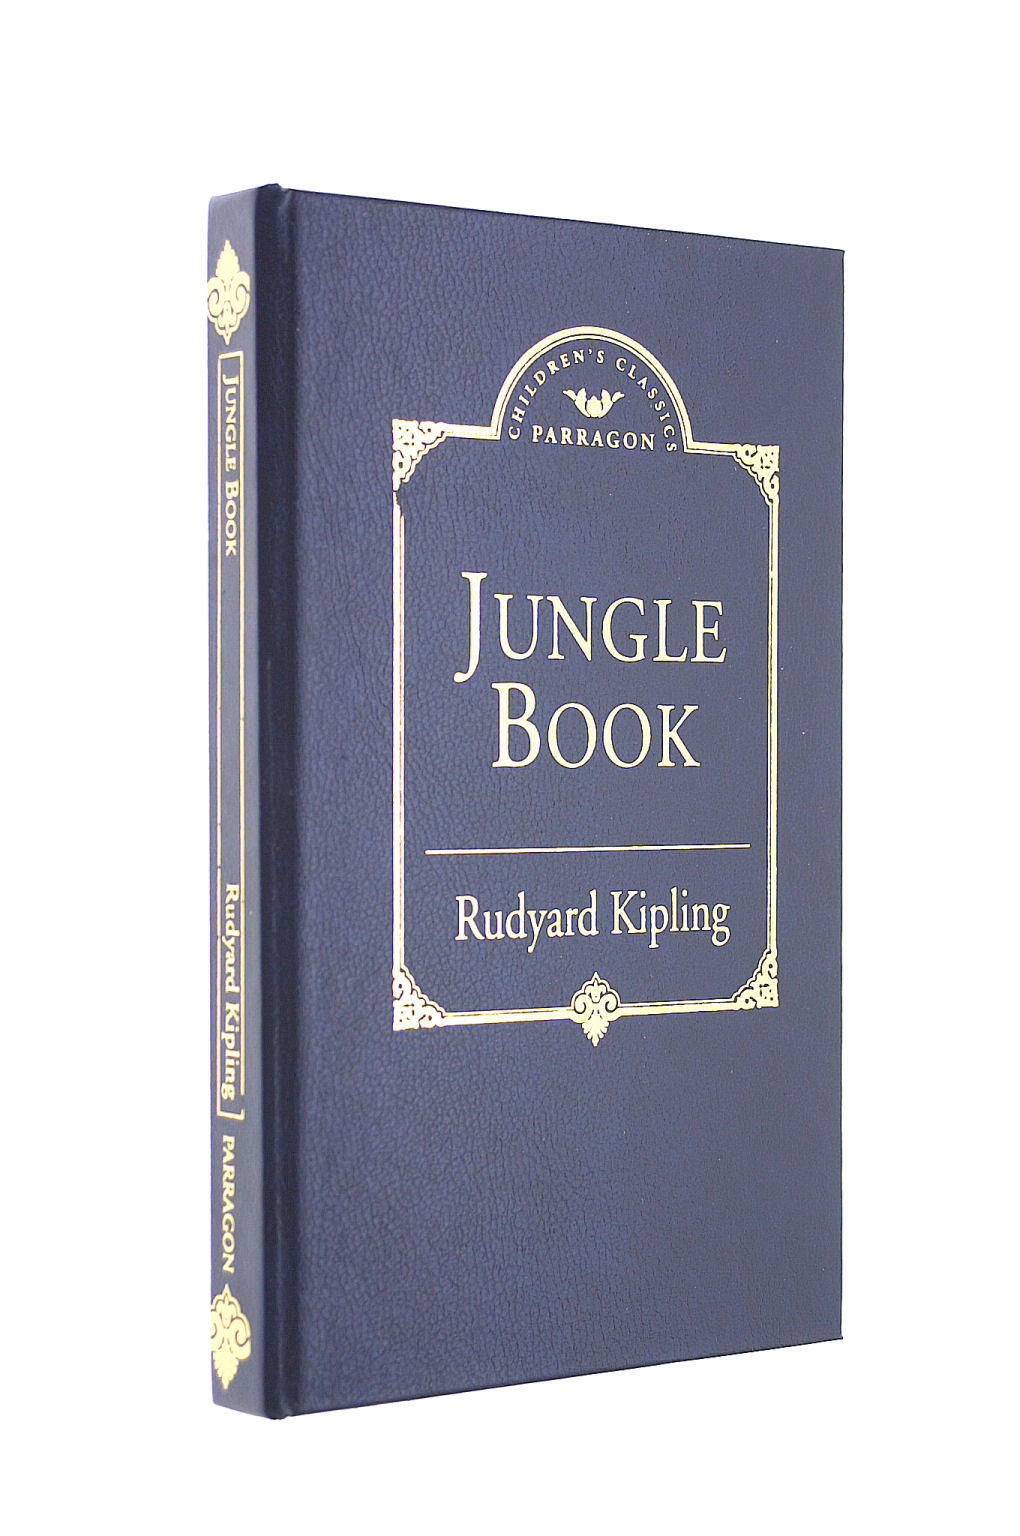 ANON - The Jungle Book